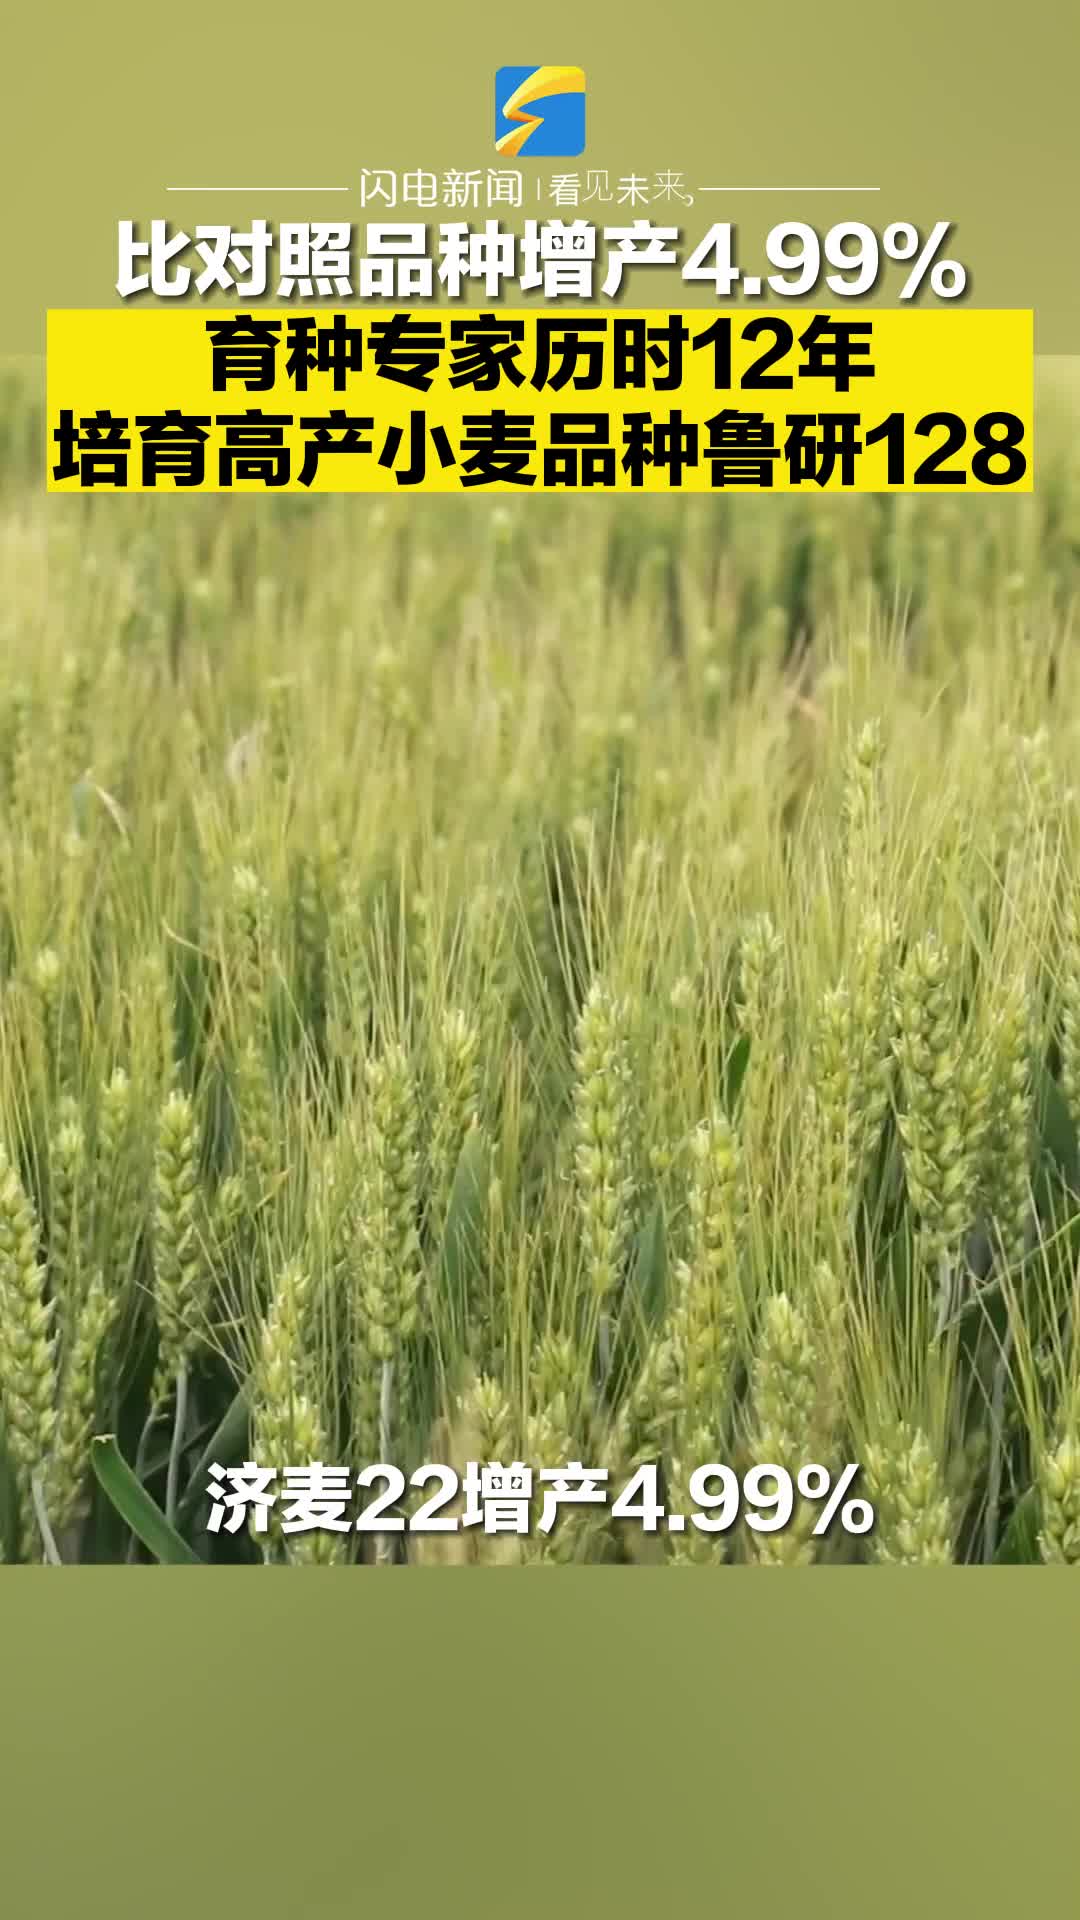 比对照品种增产4.99% 育种专家历时12年培育高产小麦品种鲁研128